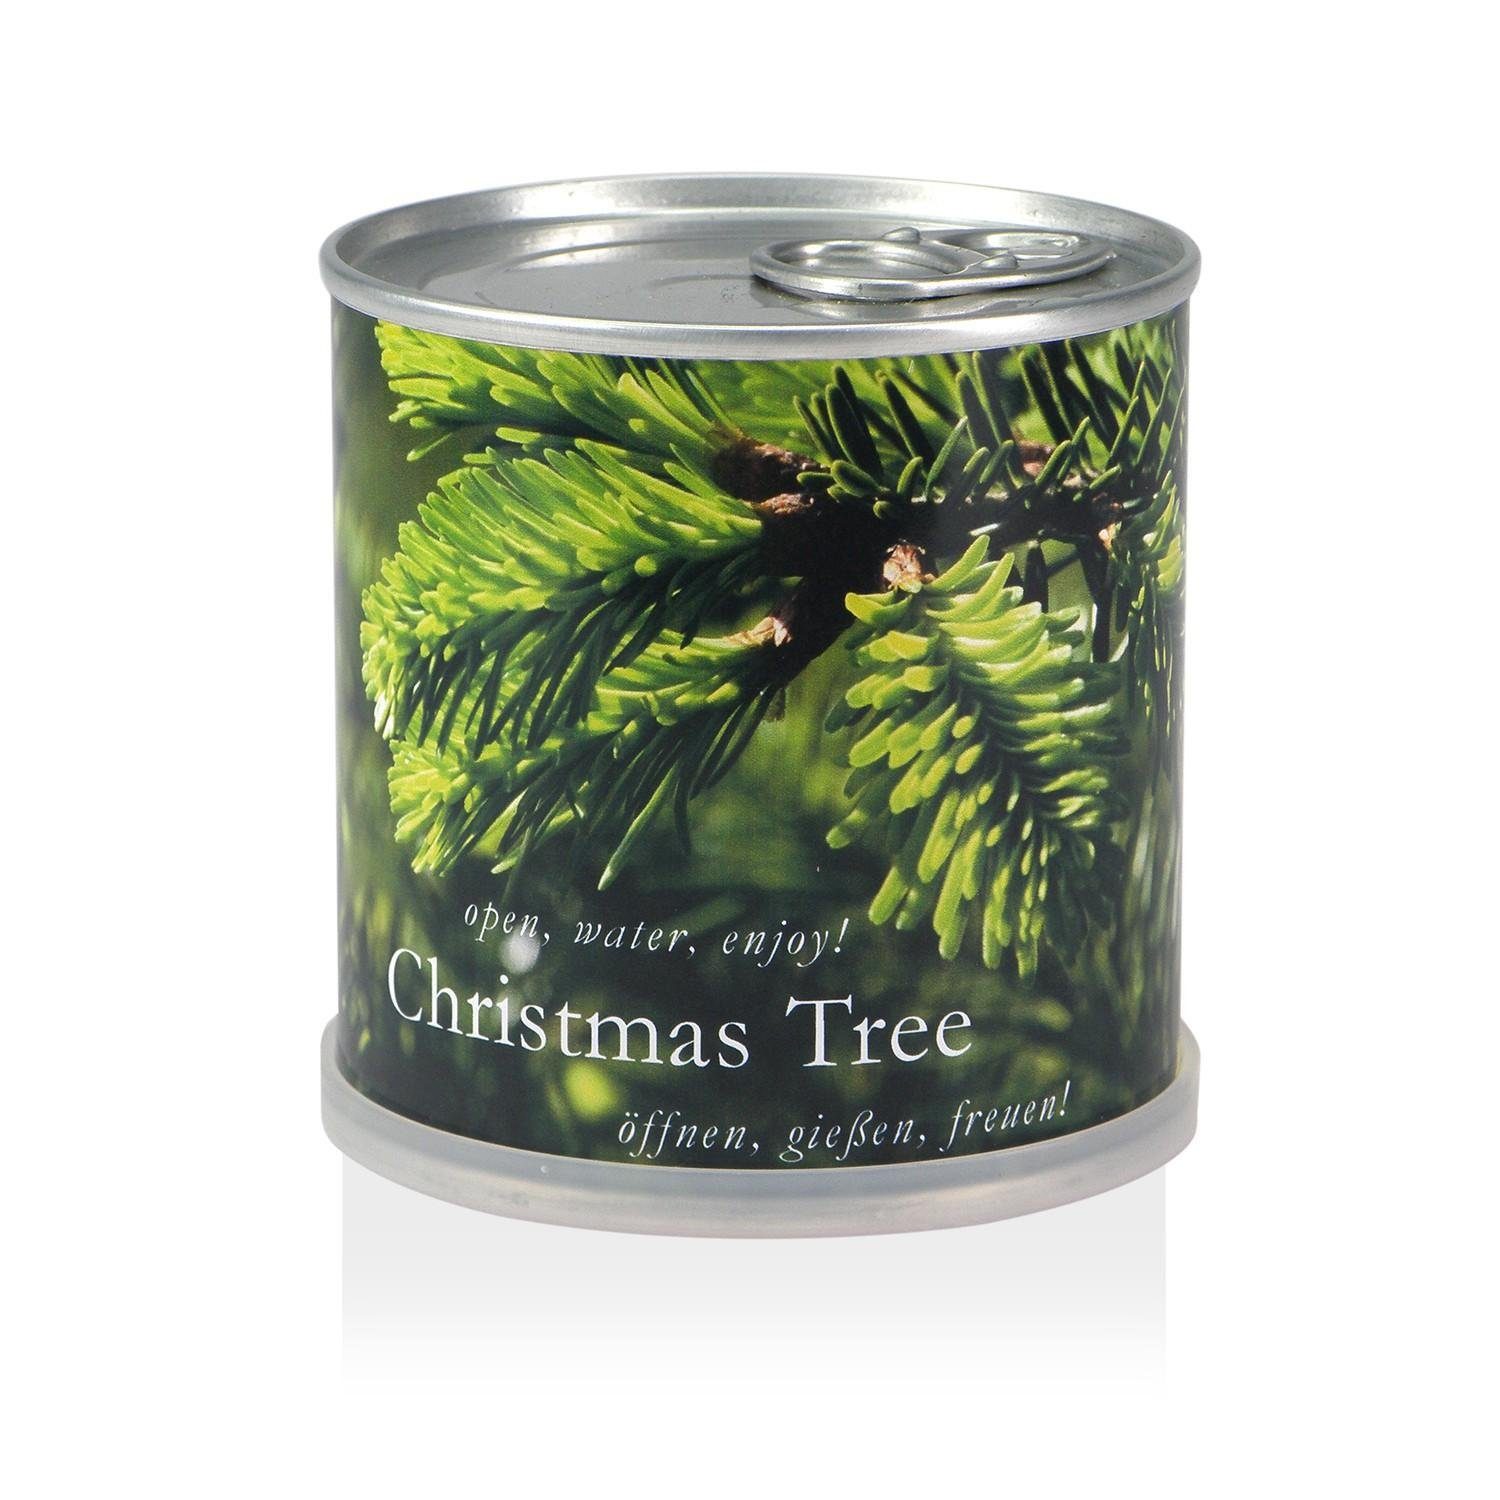 Christmas der zu Geschenk Dose MacFlowers® - Weihnachtsbaum in Weihnachten Tree Anzuchttopf